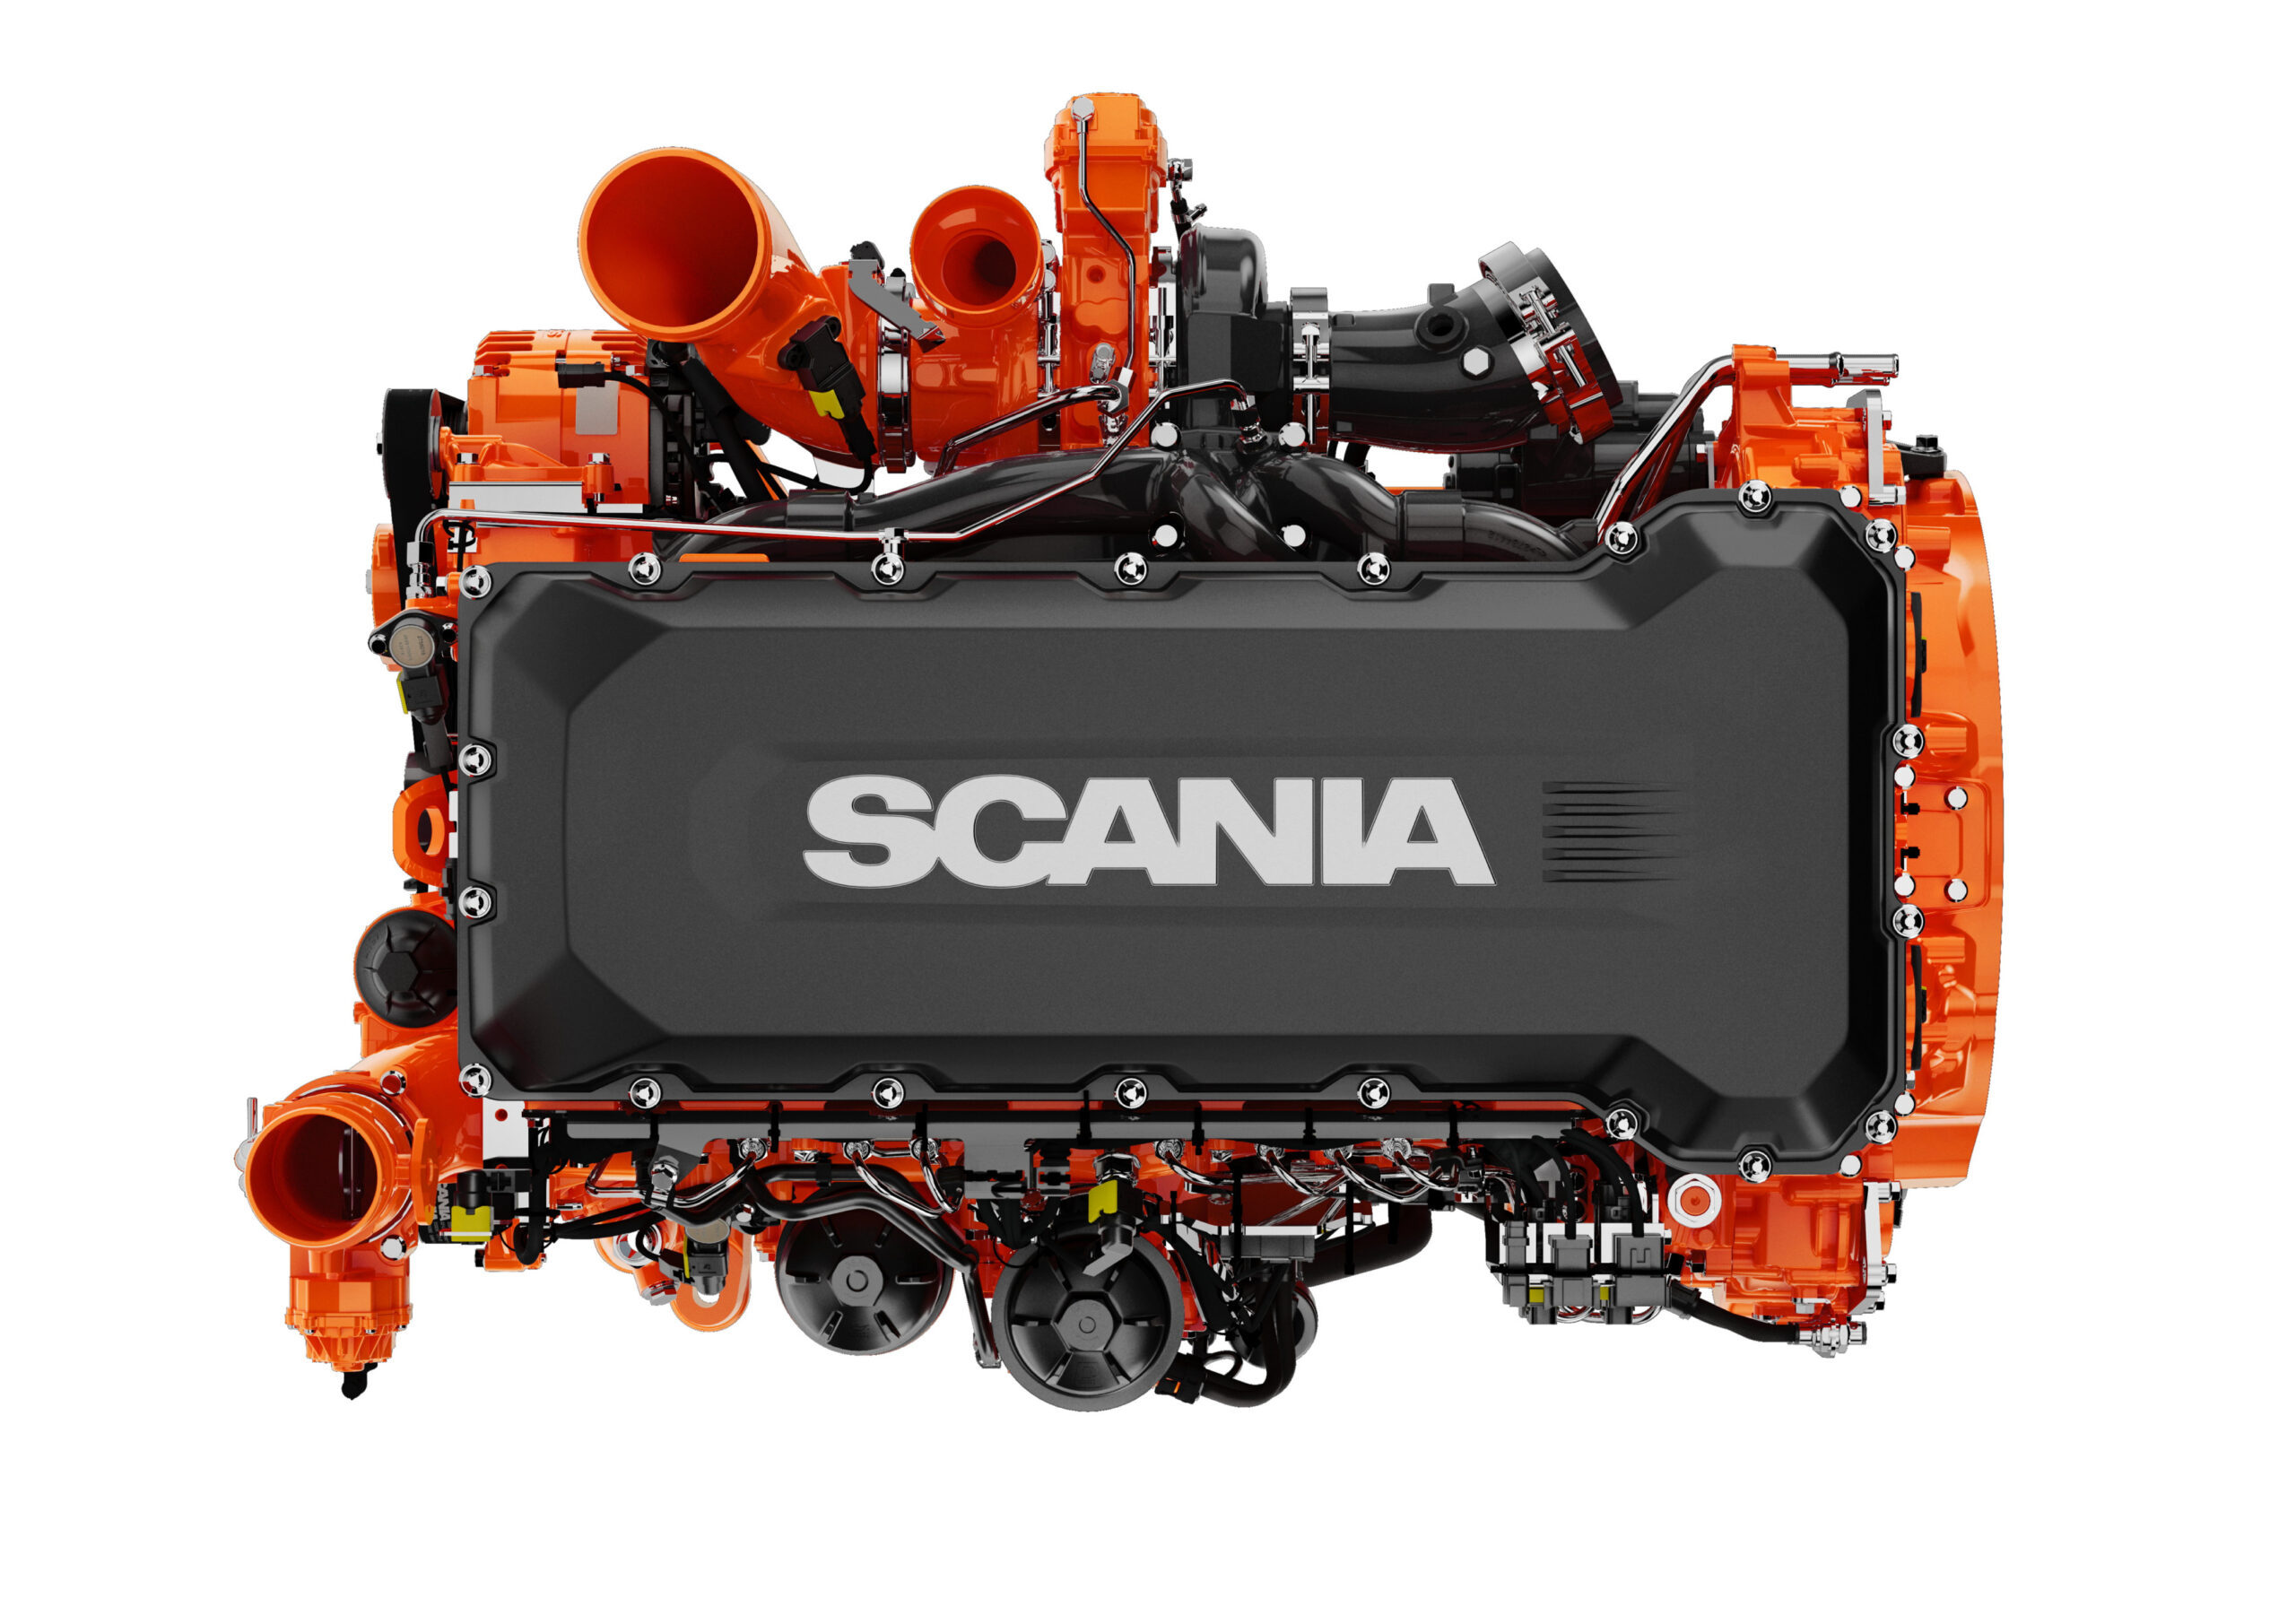 Nuova generazione di motori Scania: vita utile più lunga fino al 50% e minori emissioni di CO2